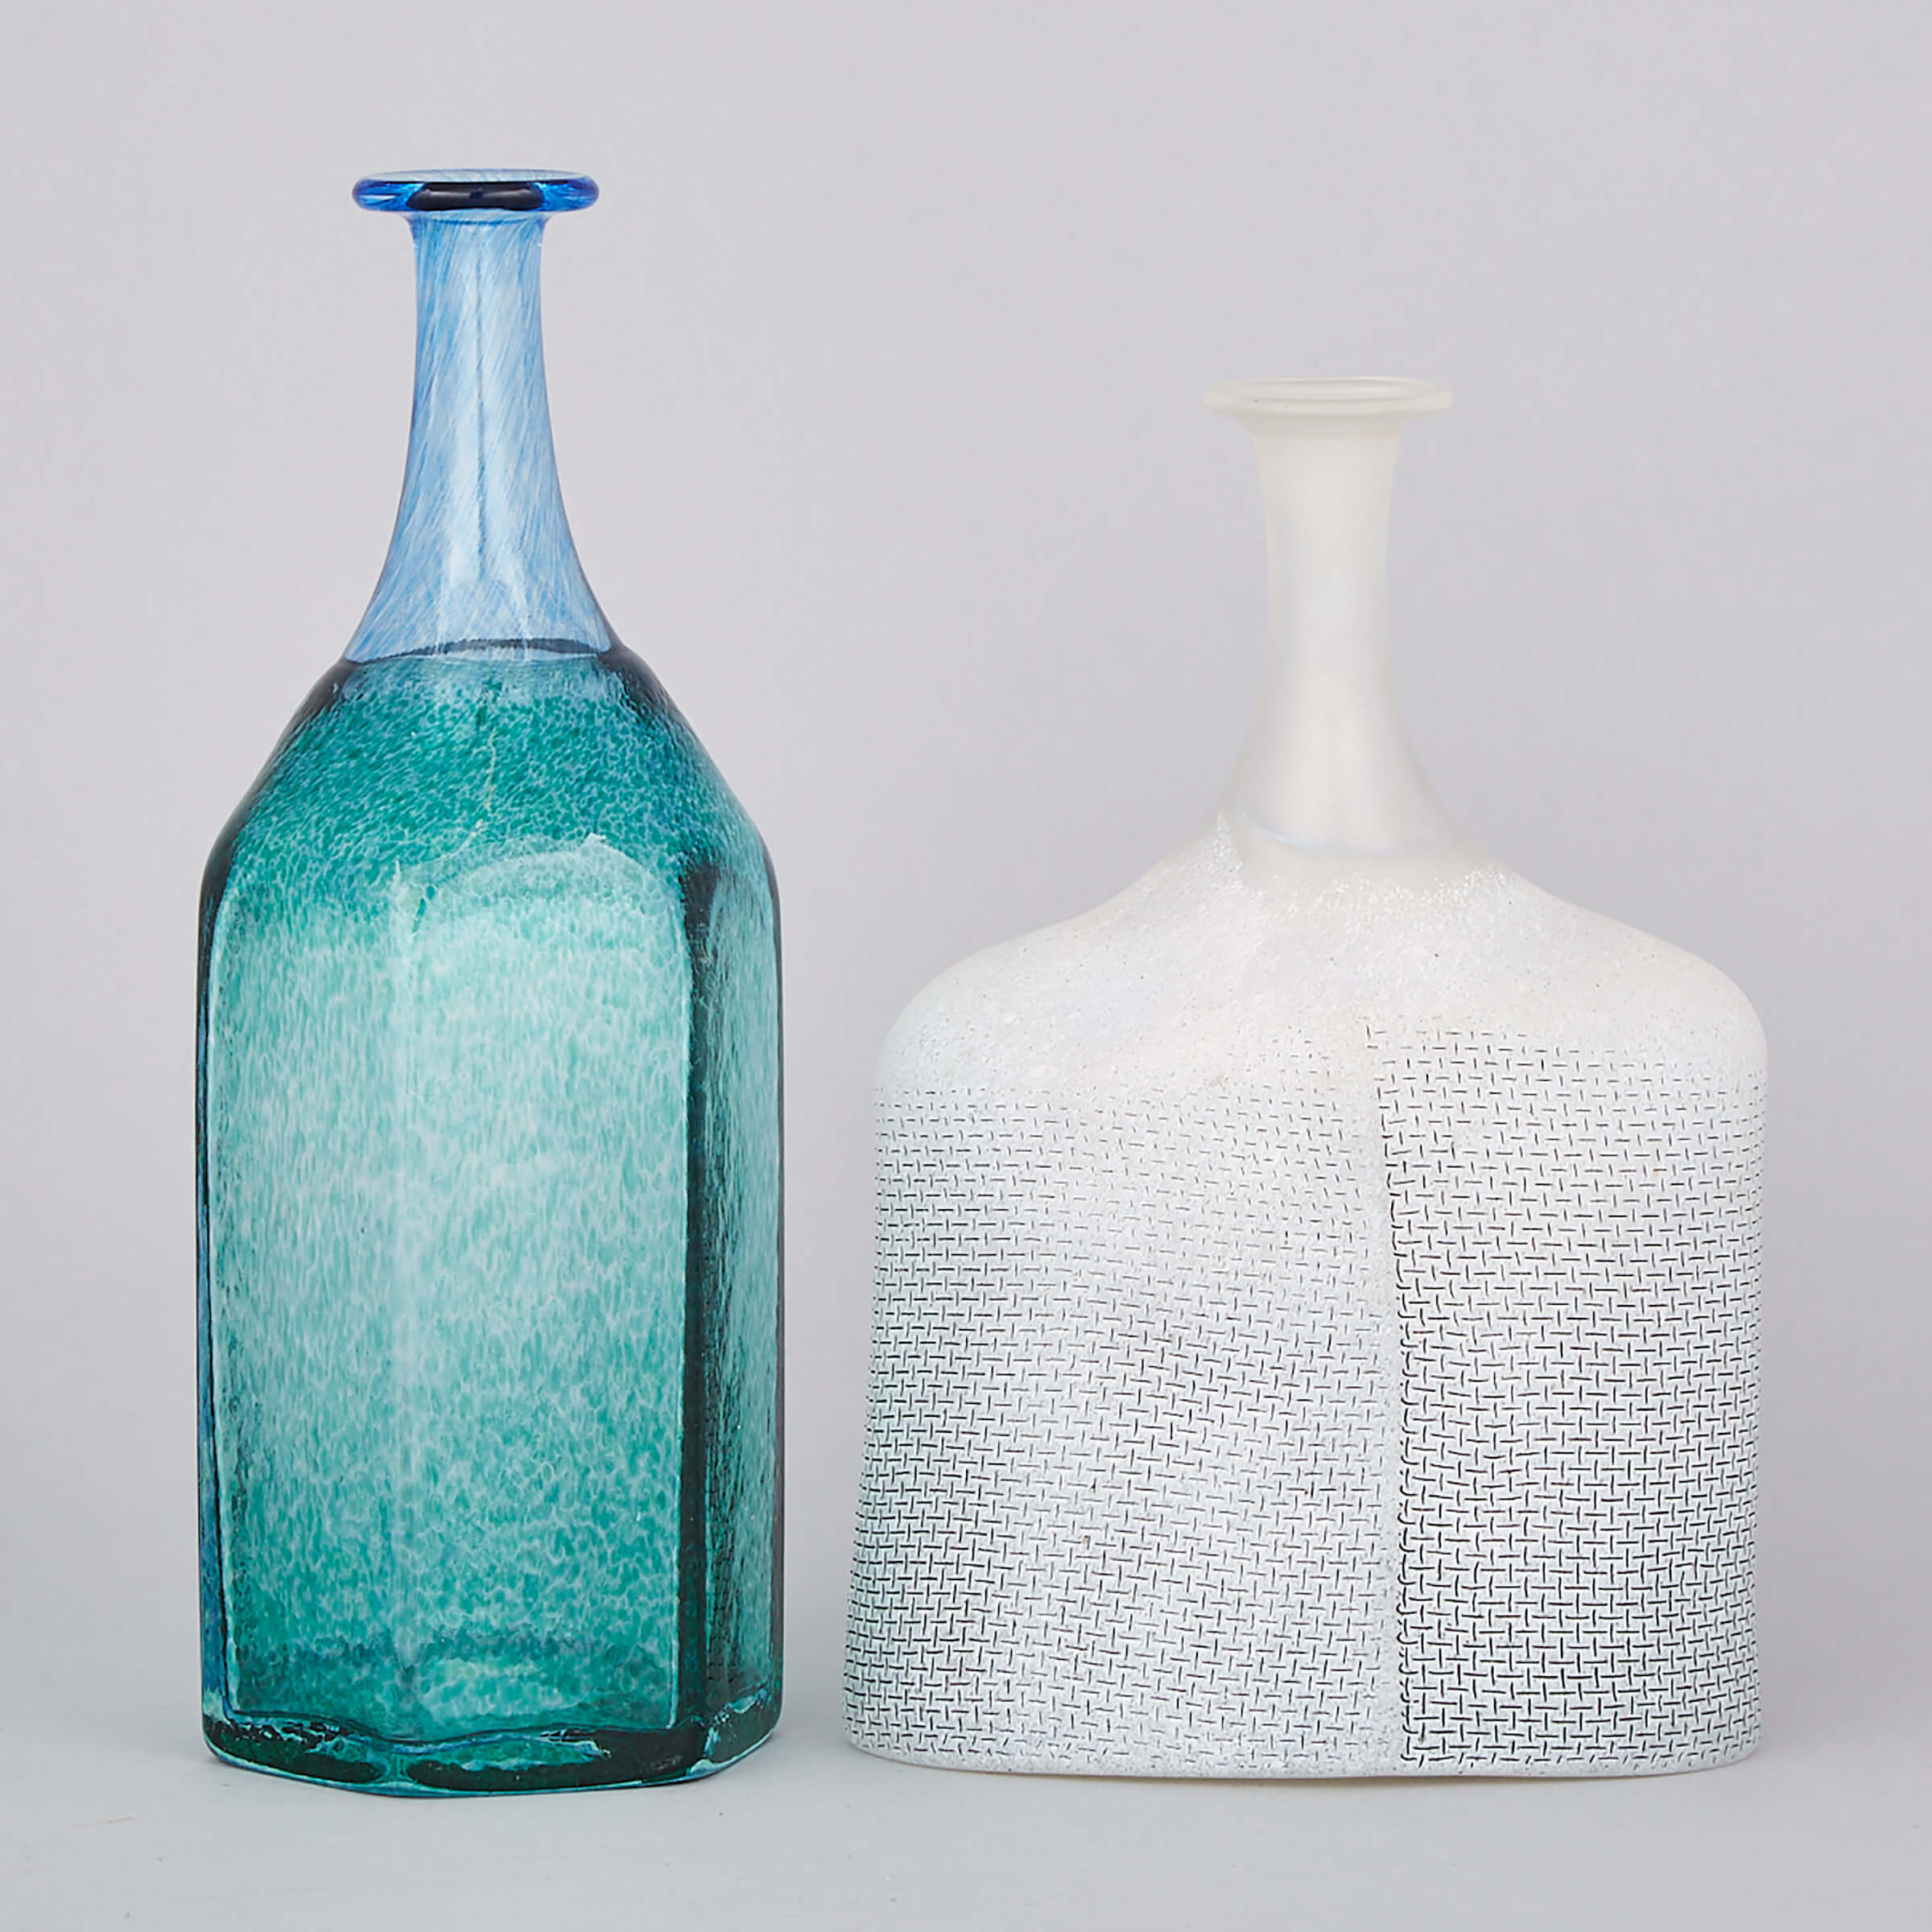 Two Kosta Boda Glass Vases, Bertil Vallien, late 20th century